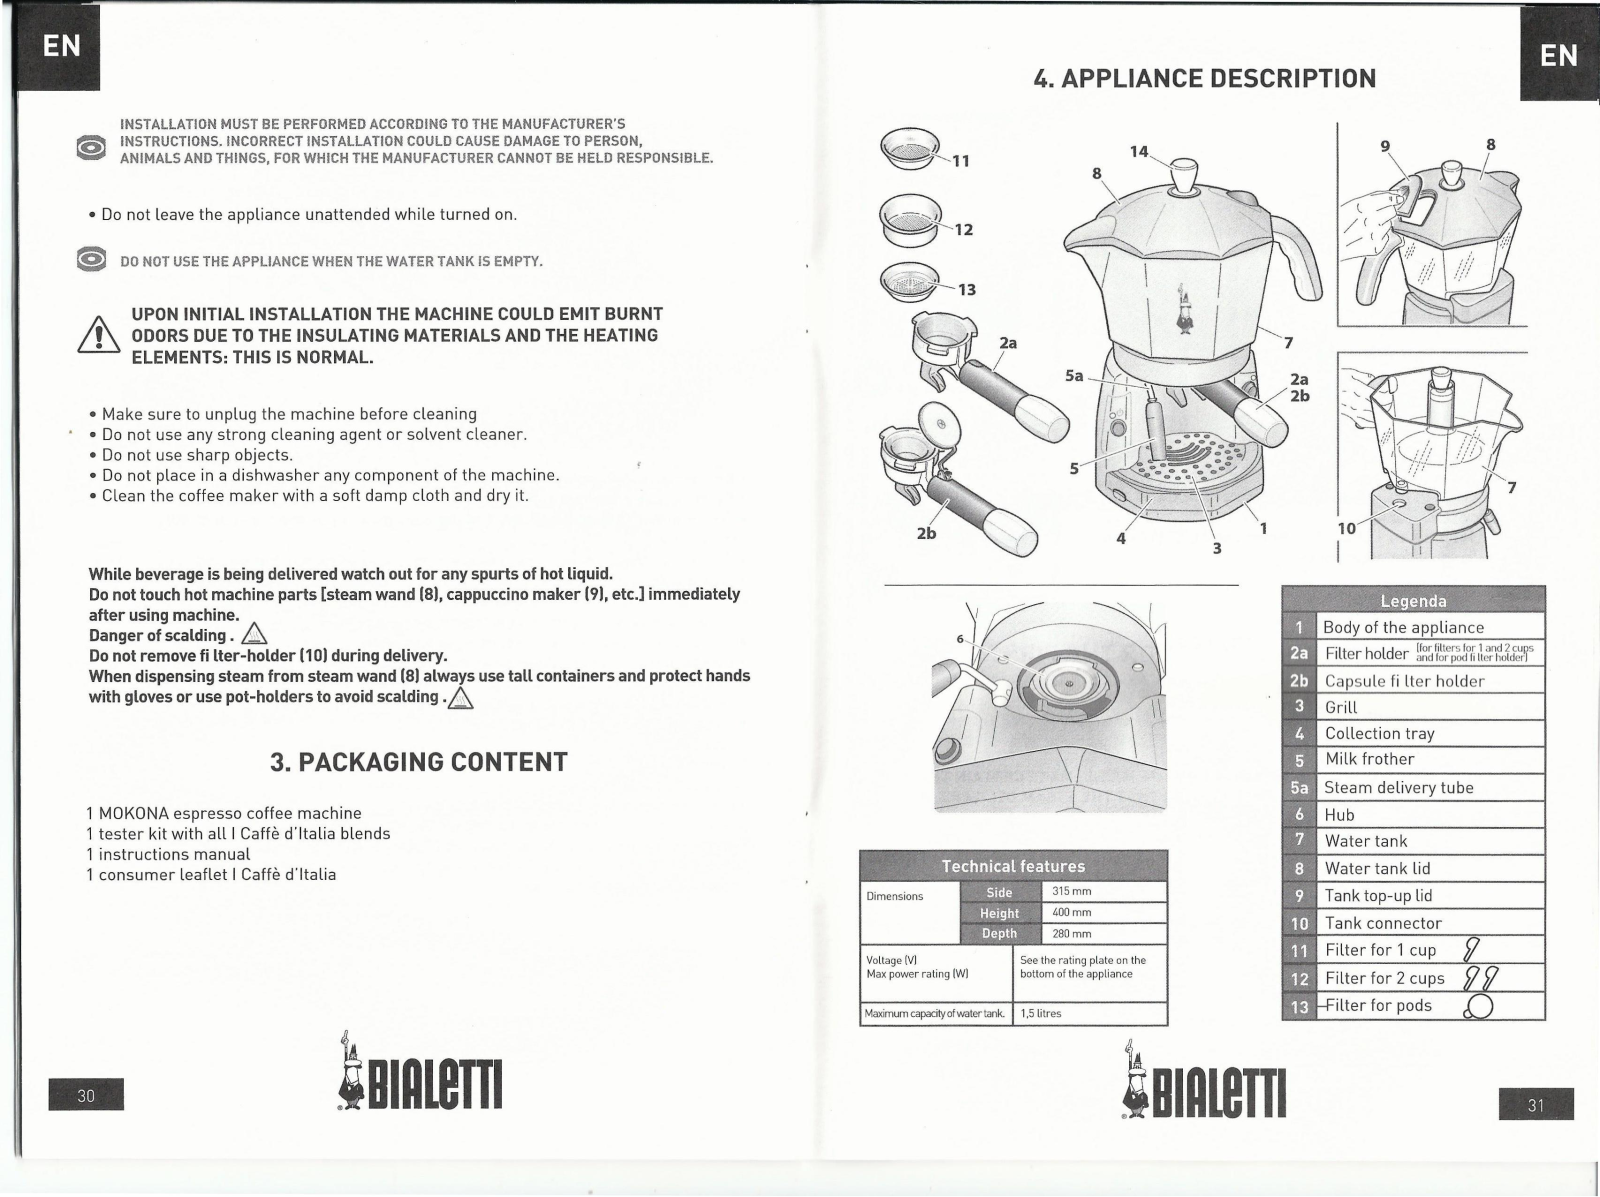 BIALETTI CF40 User Manual